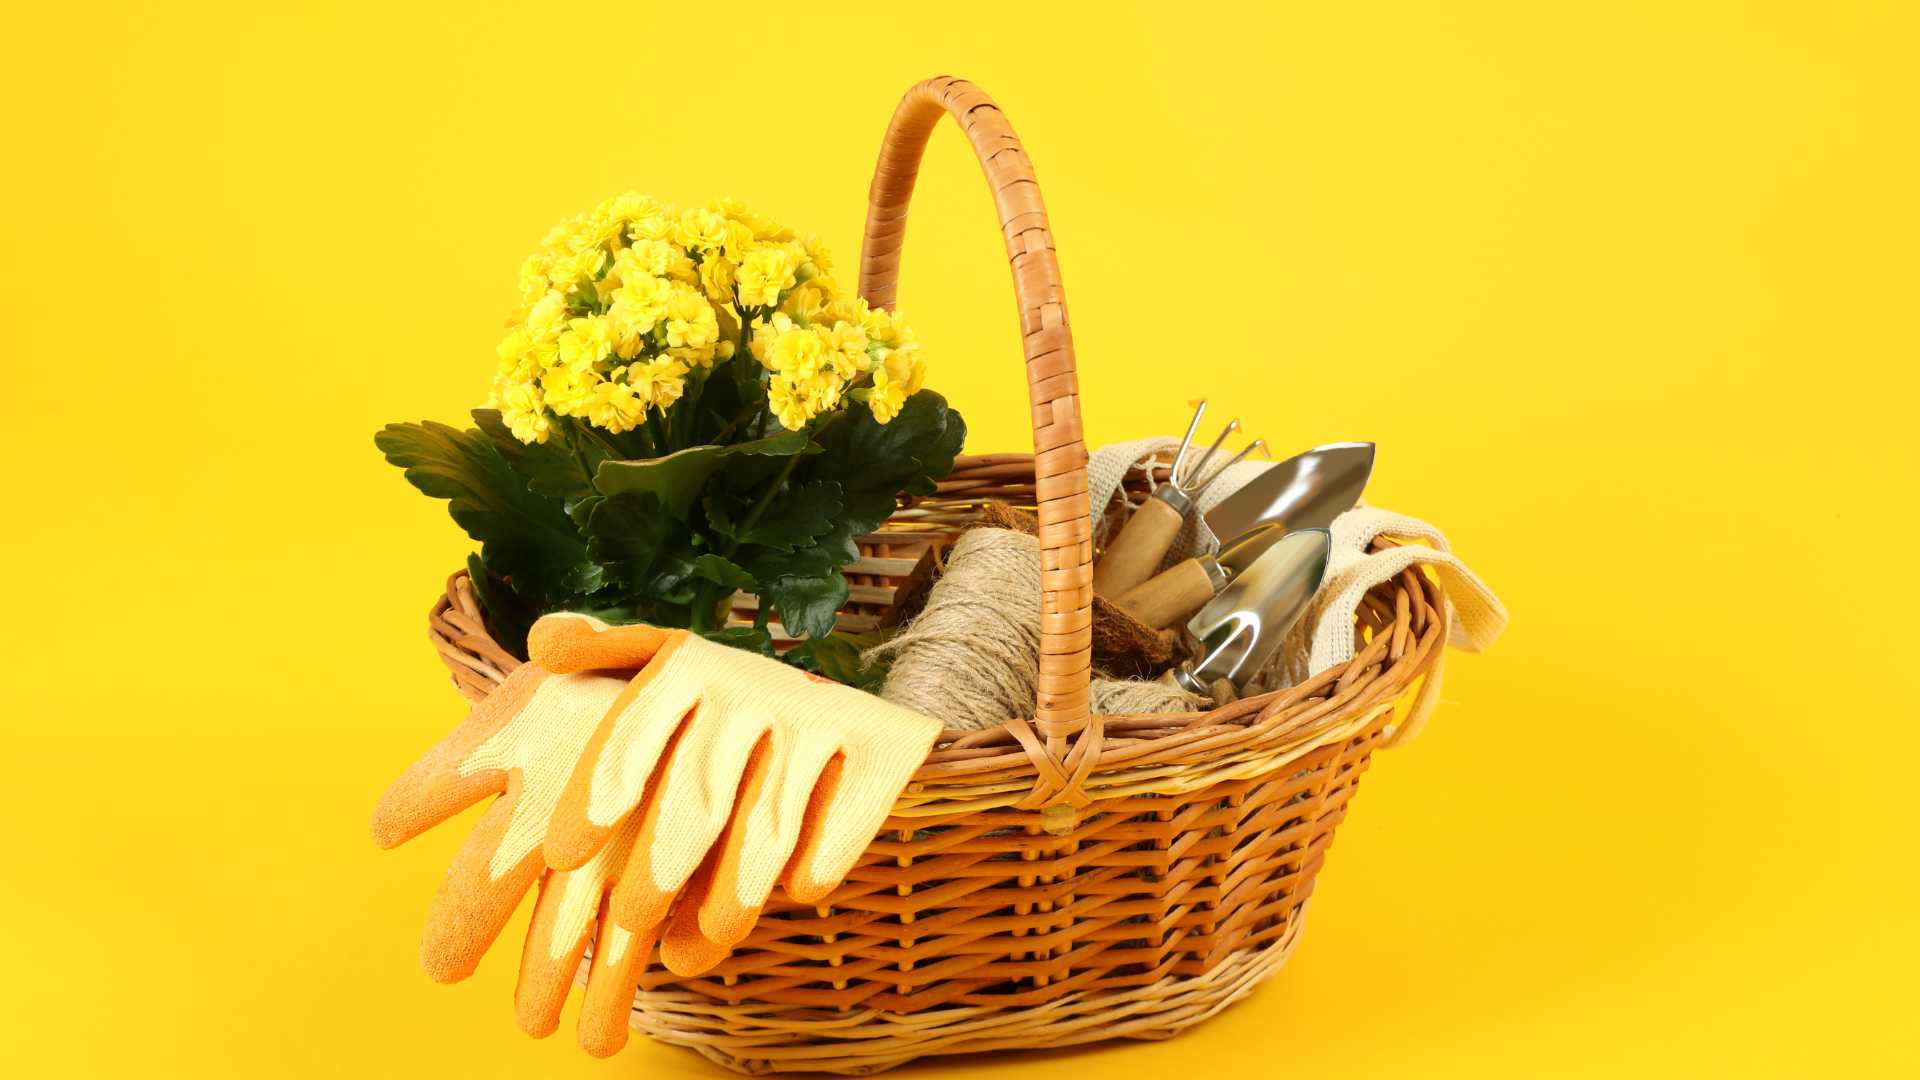 accessoire jardinerie sur fond jaune